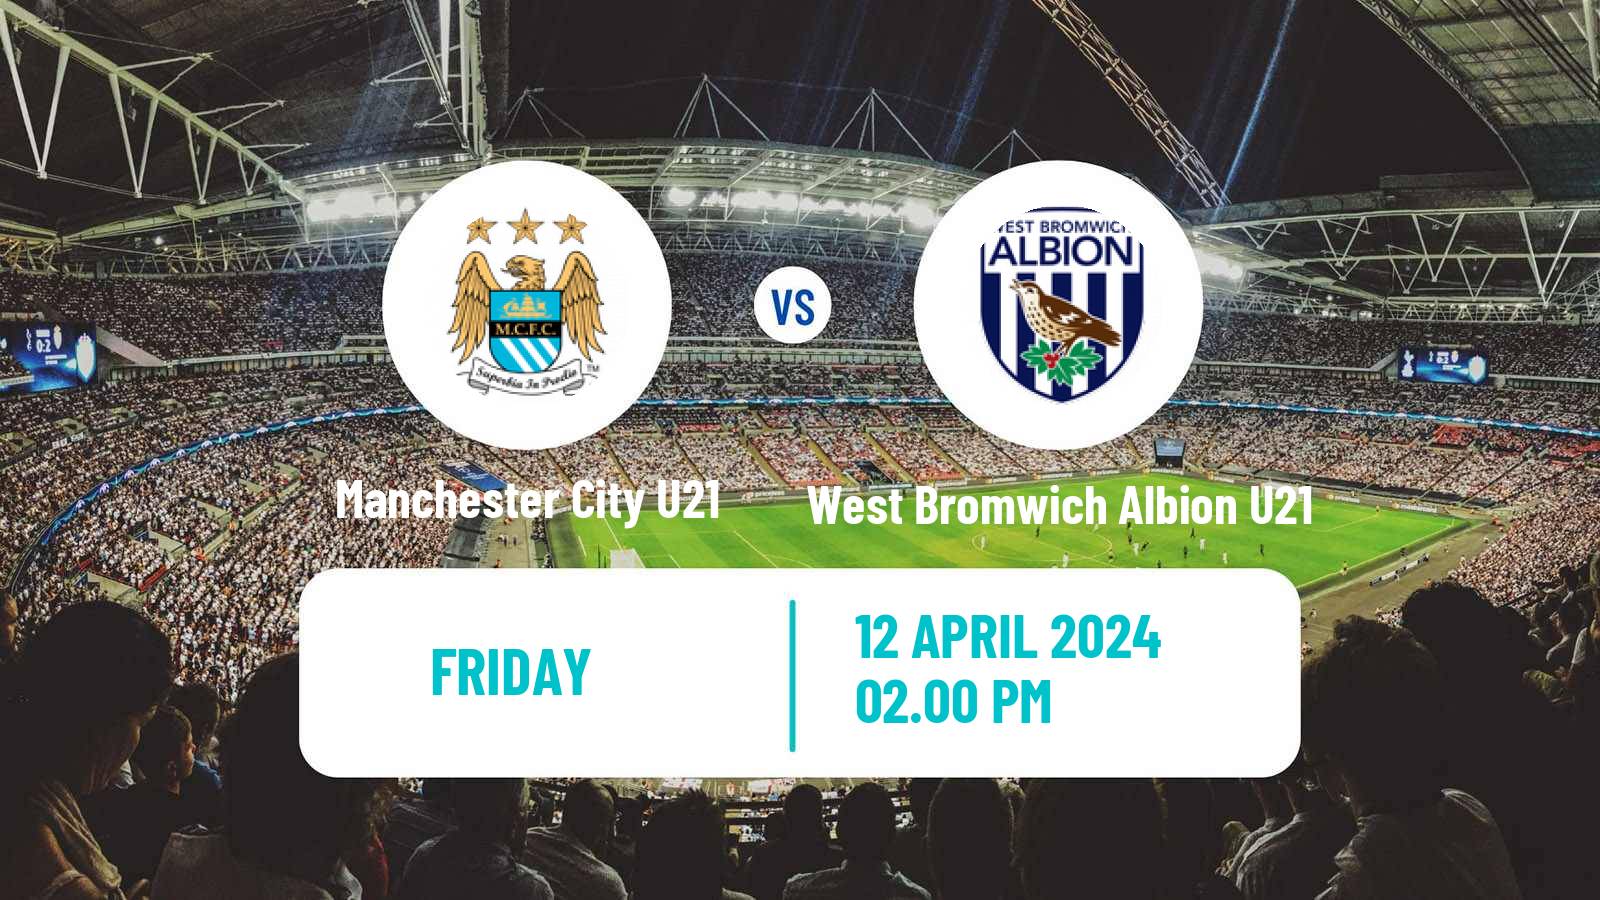 Soccer English Premier League 2 Manchester City U21 - West Bromwich Albion U21